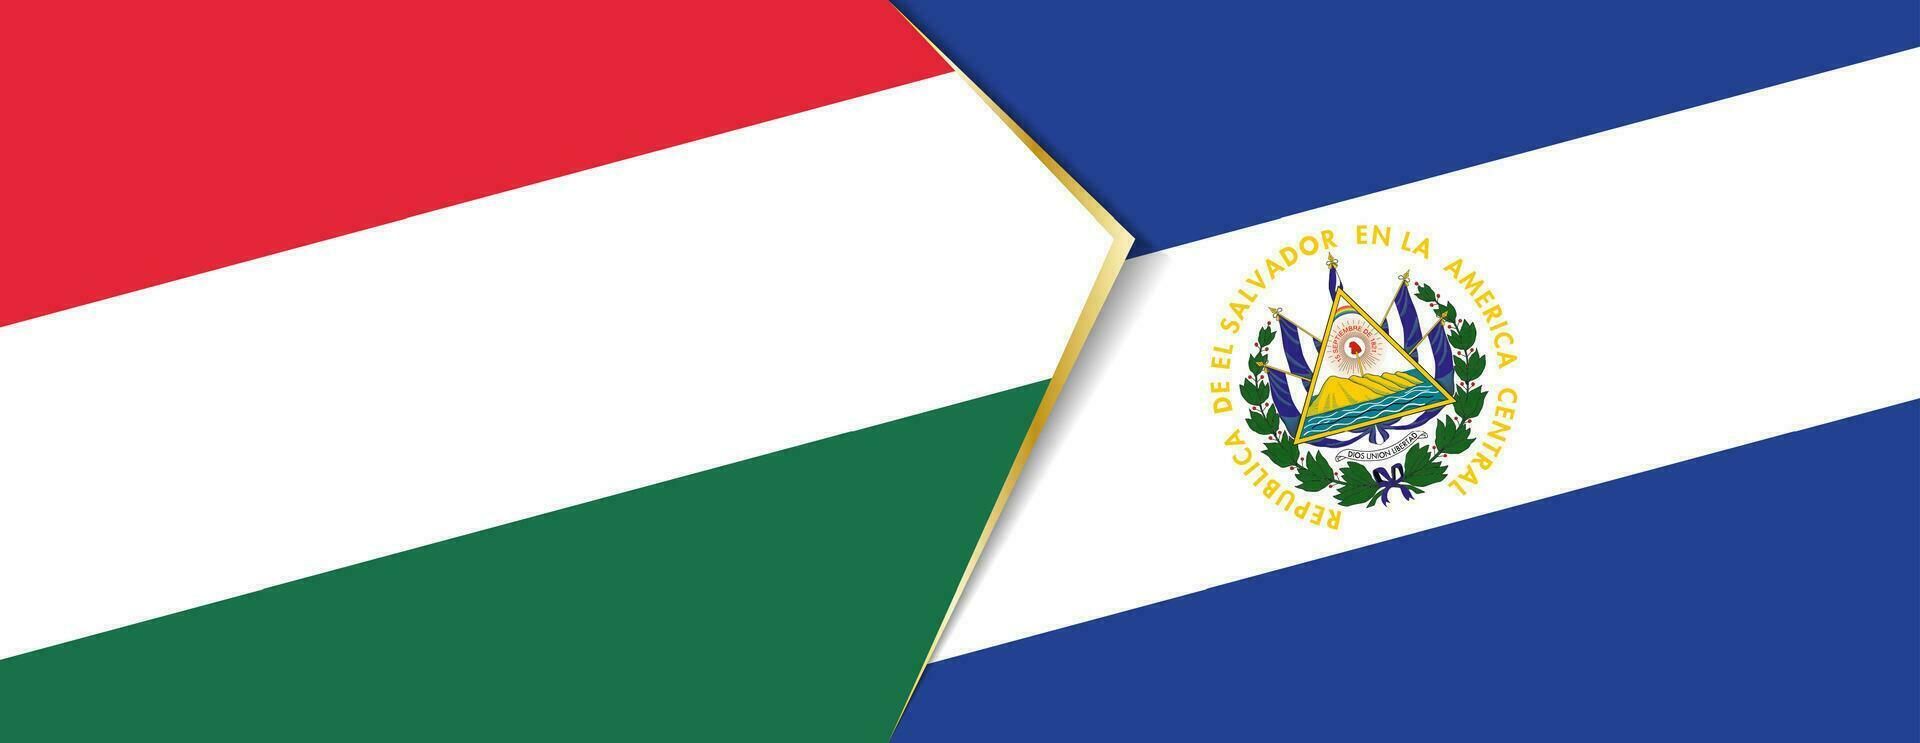 Hongarije en el Salvador vlaggen, twee vector vlaggen.